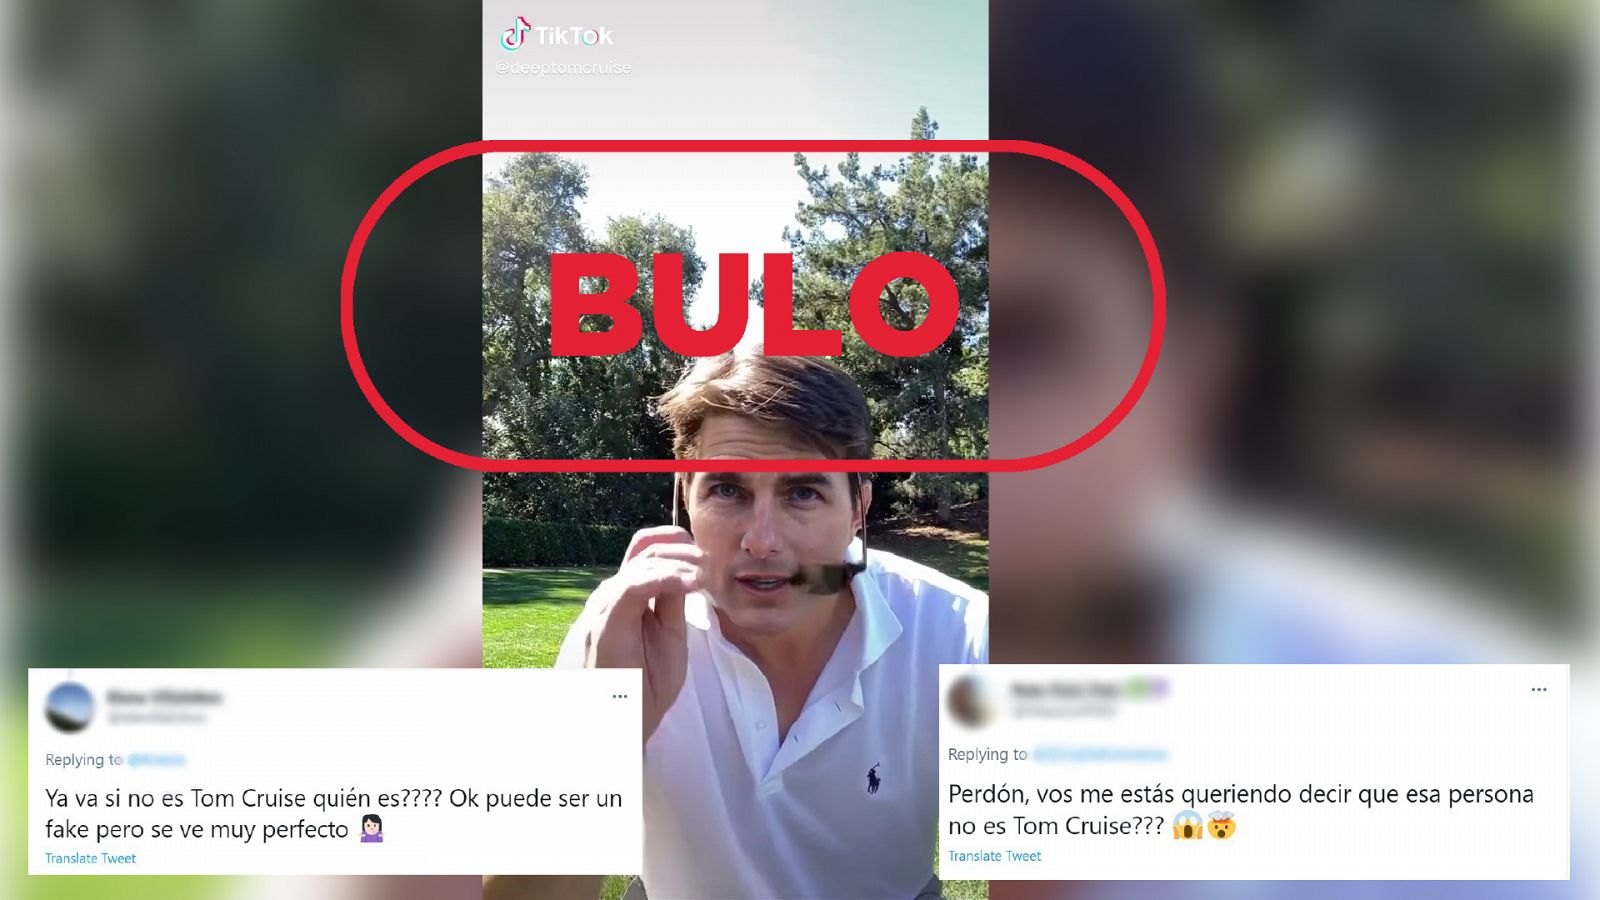 Imagen del vídeo deepfake de la cuenta de TikTok DeepTomCruise con el sello bulo en rojo de VerificaRTVE y las reacciones de dos internautas en Twitter que se pregunta si el vídeo es real o no